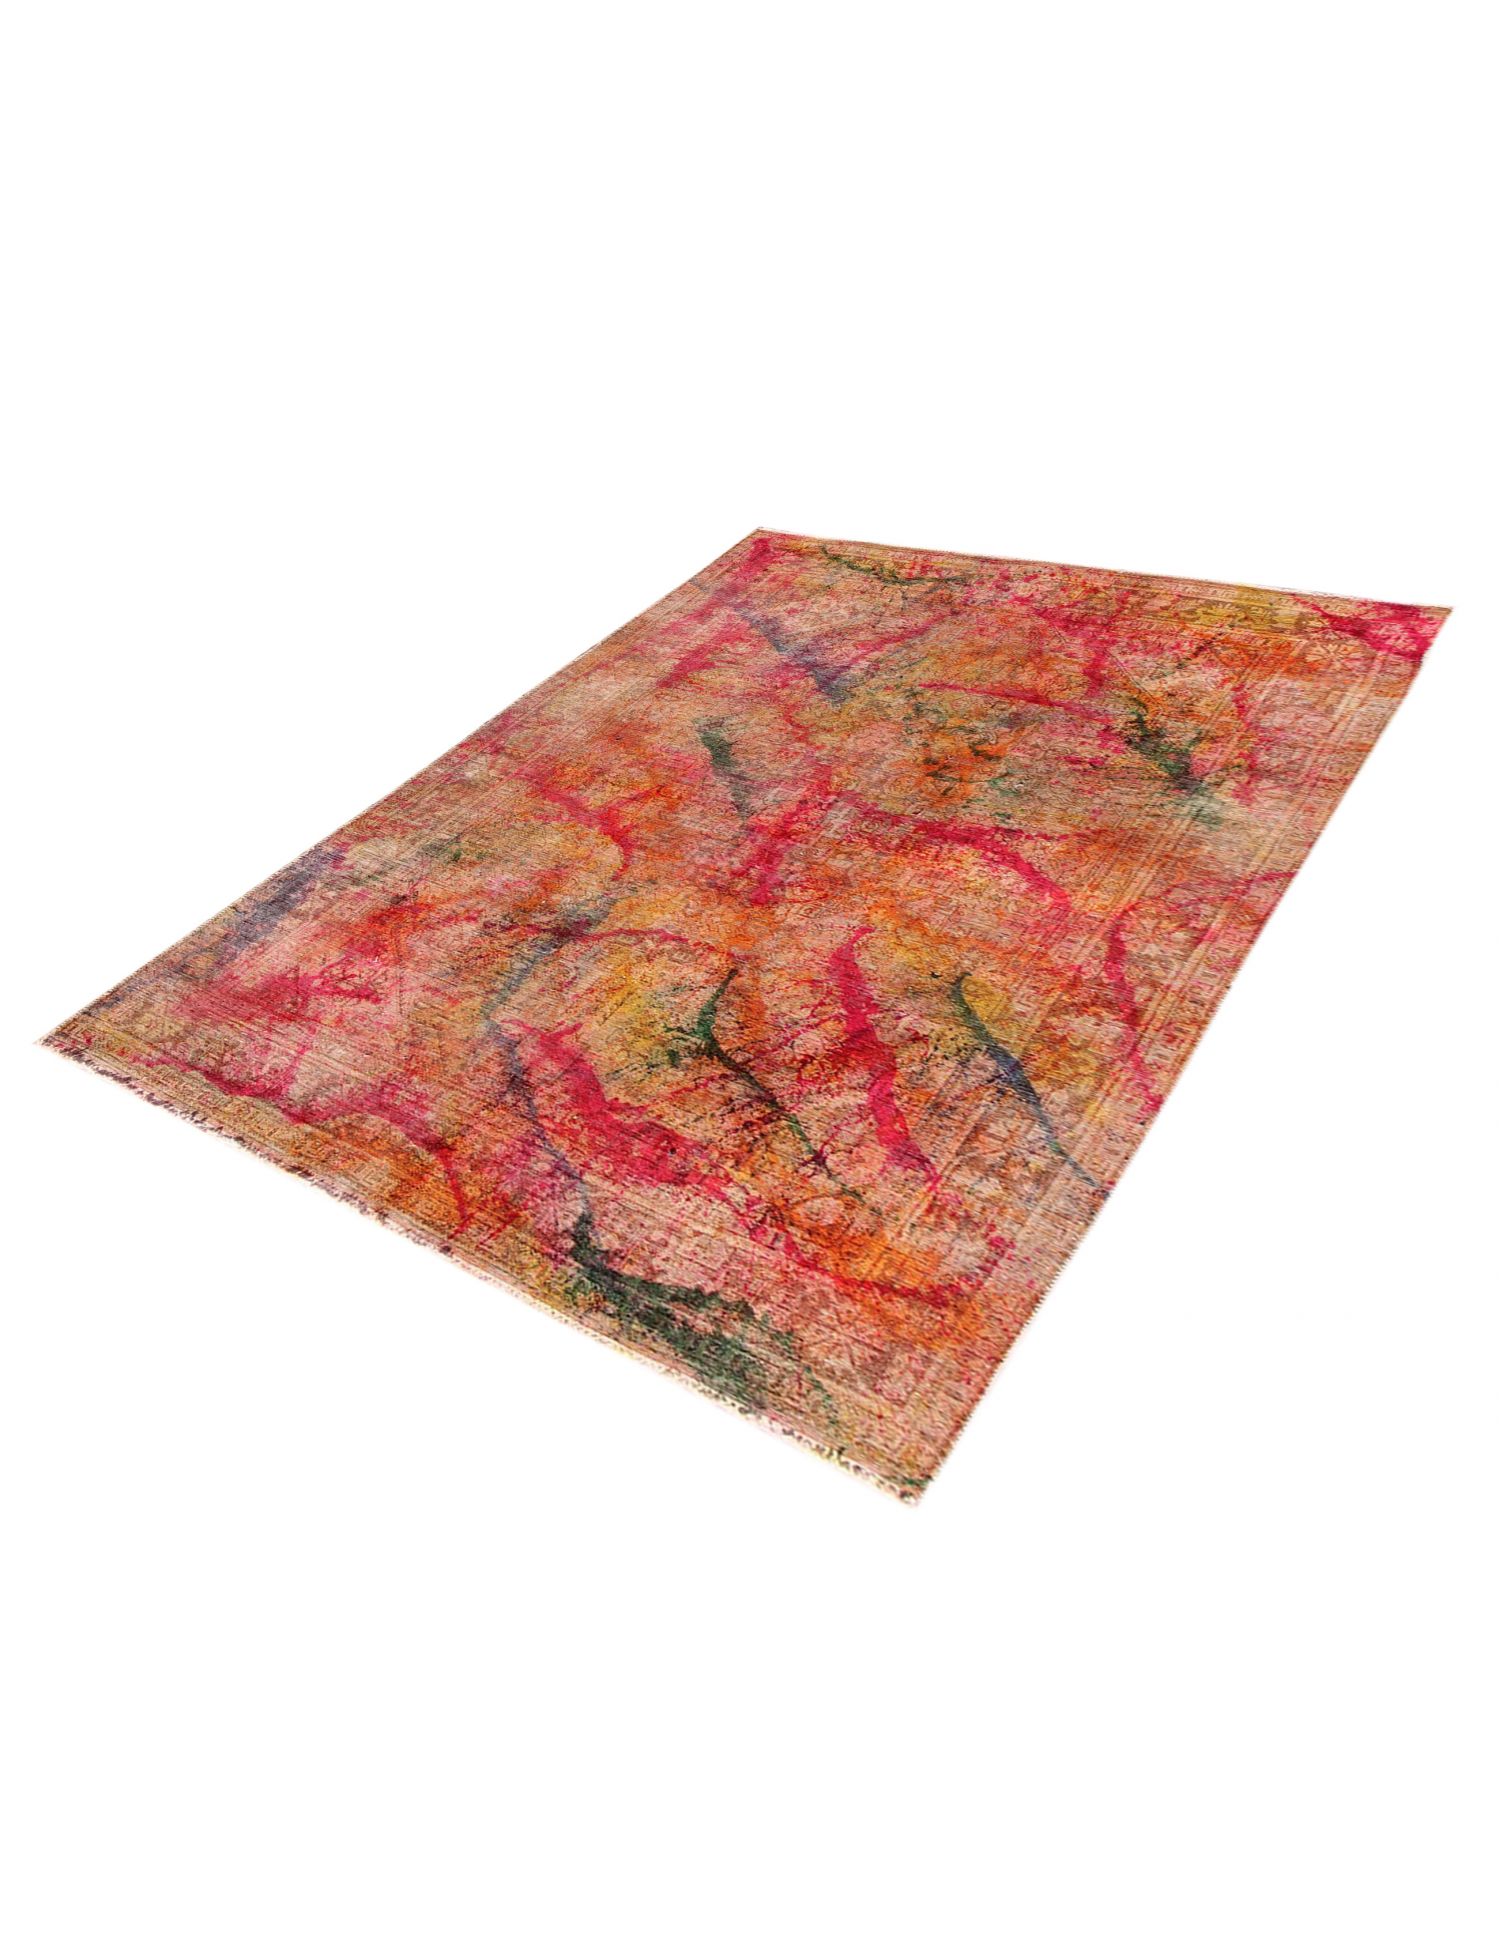 Persischer Vintage Teppich  mehrfarbig <br/>295 x 200 cm